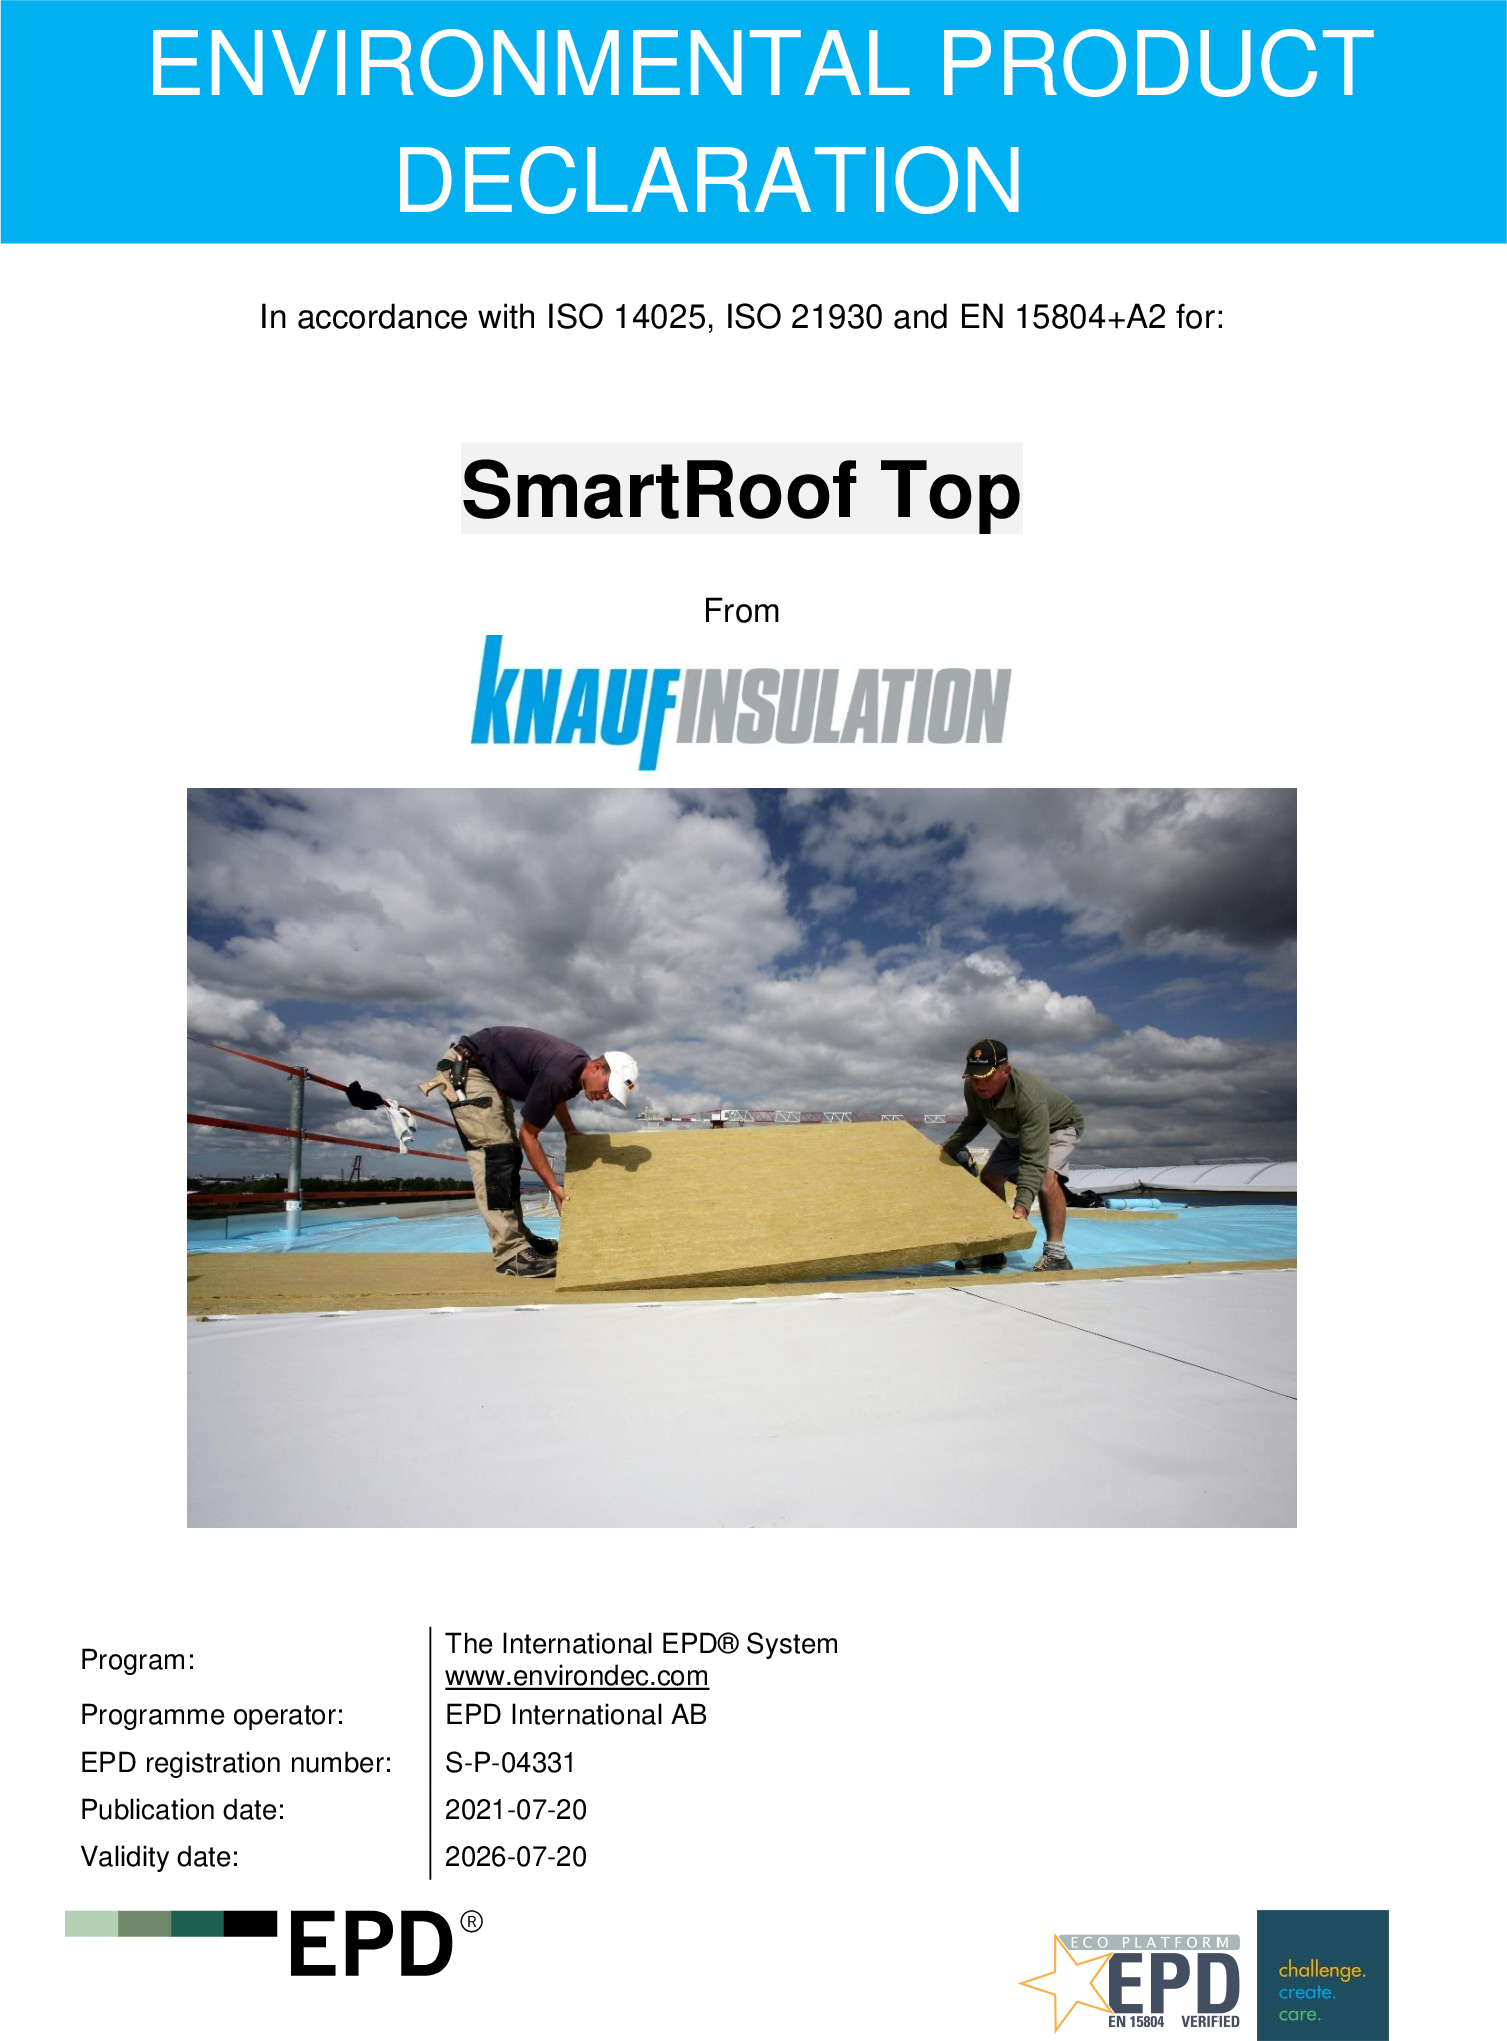 SmartRoof Top